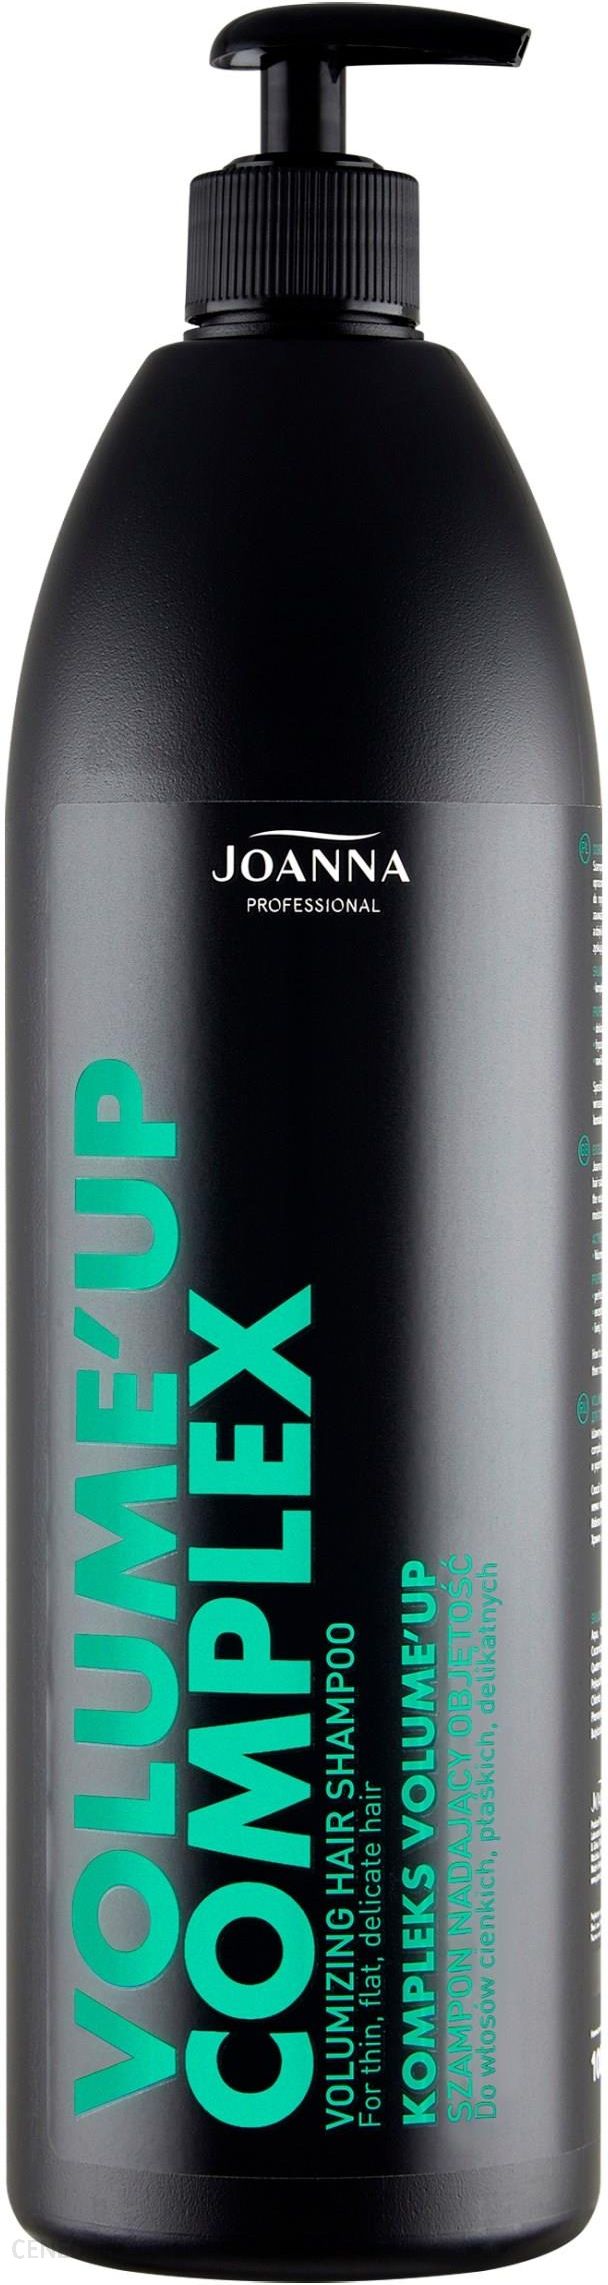 joanna szampon nadający objętość z kolagenem